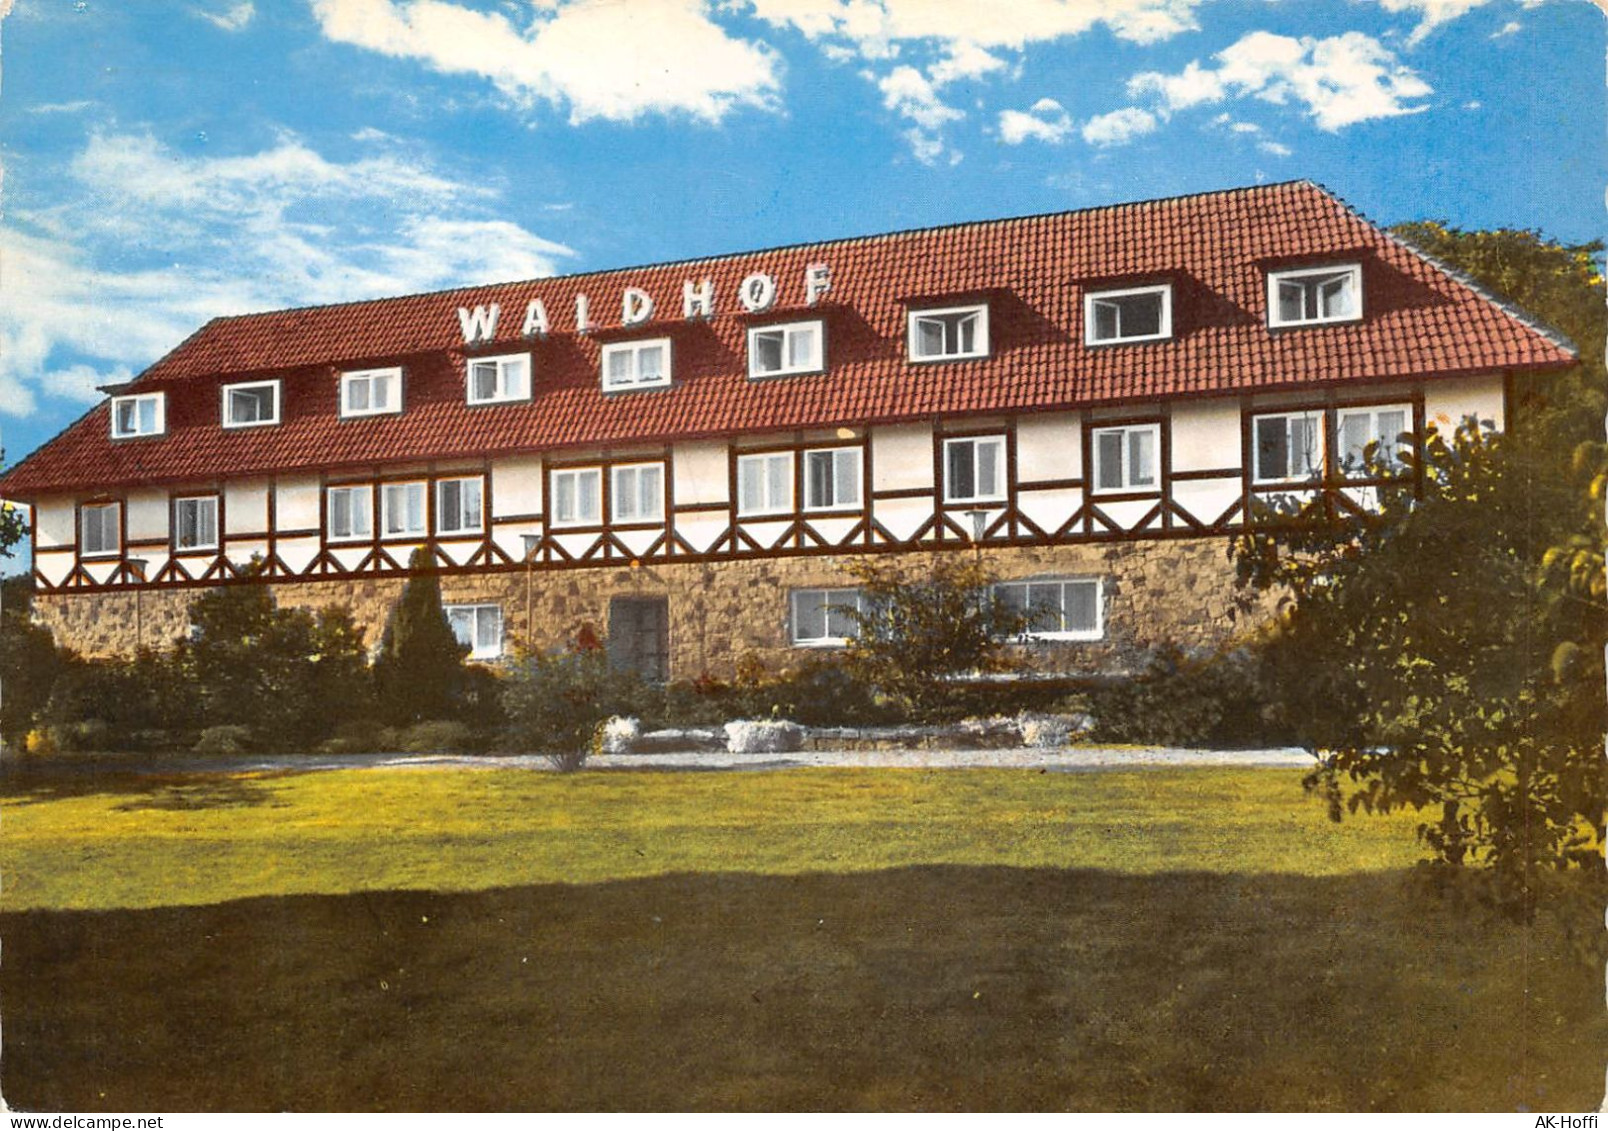 BAD EILSEN - Gaststätte Der Waldhof (907) - Schaumburg